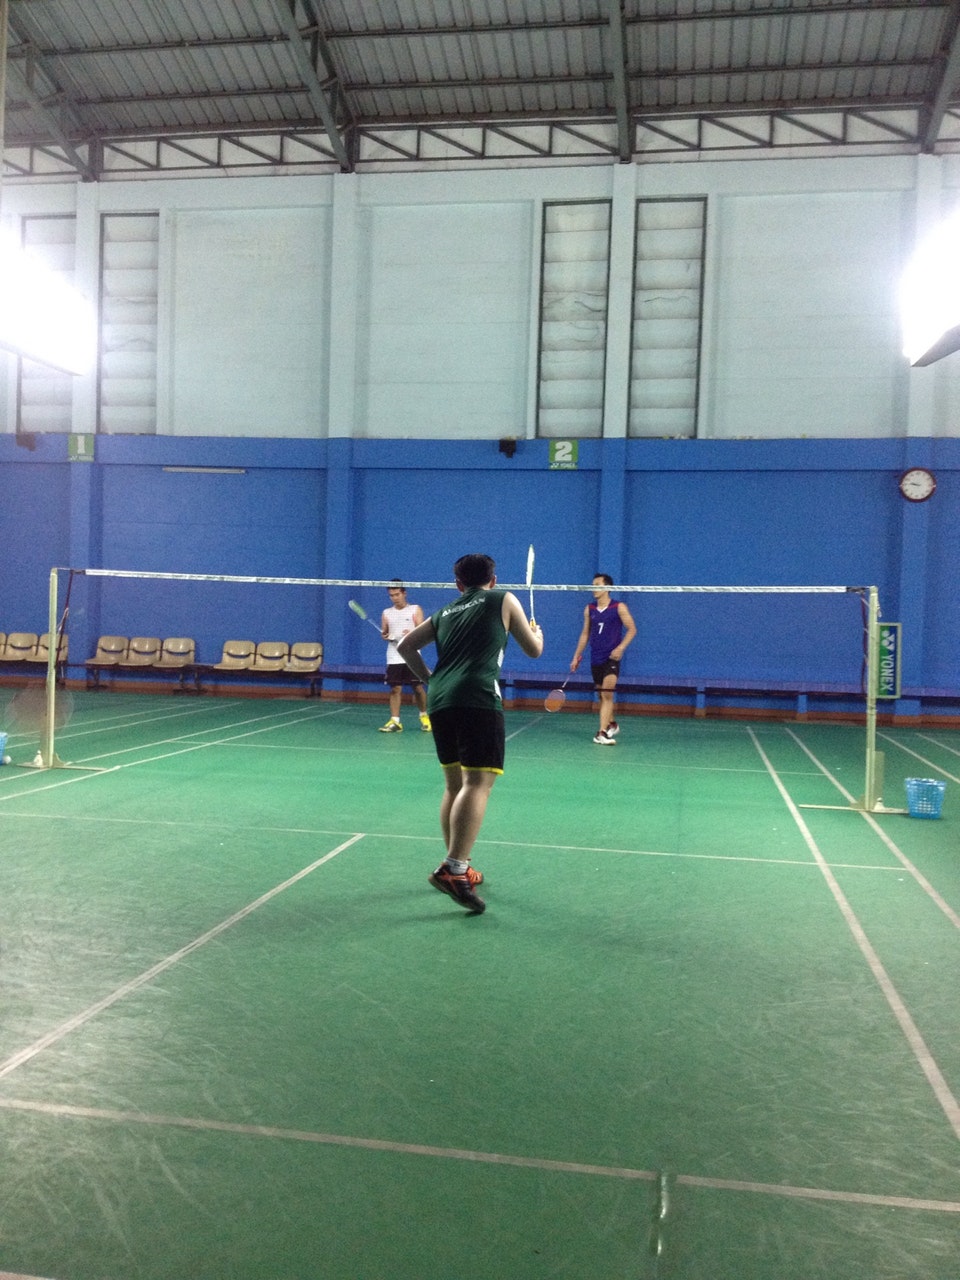 สนามแบดมินตัน - C.R. Badminton 